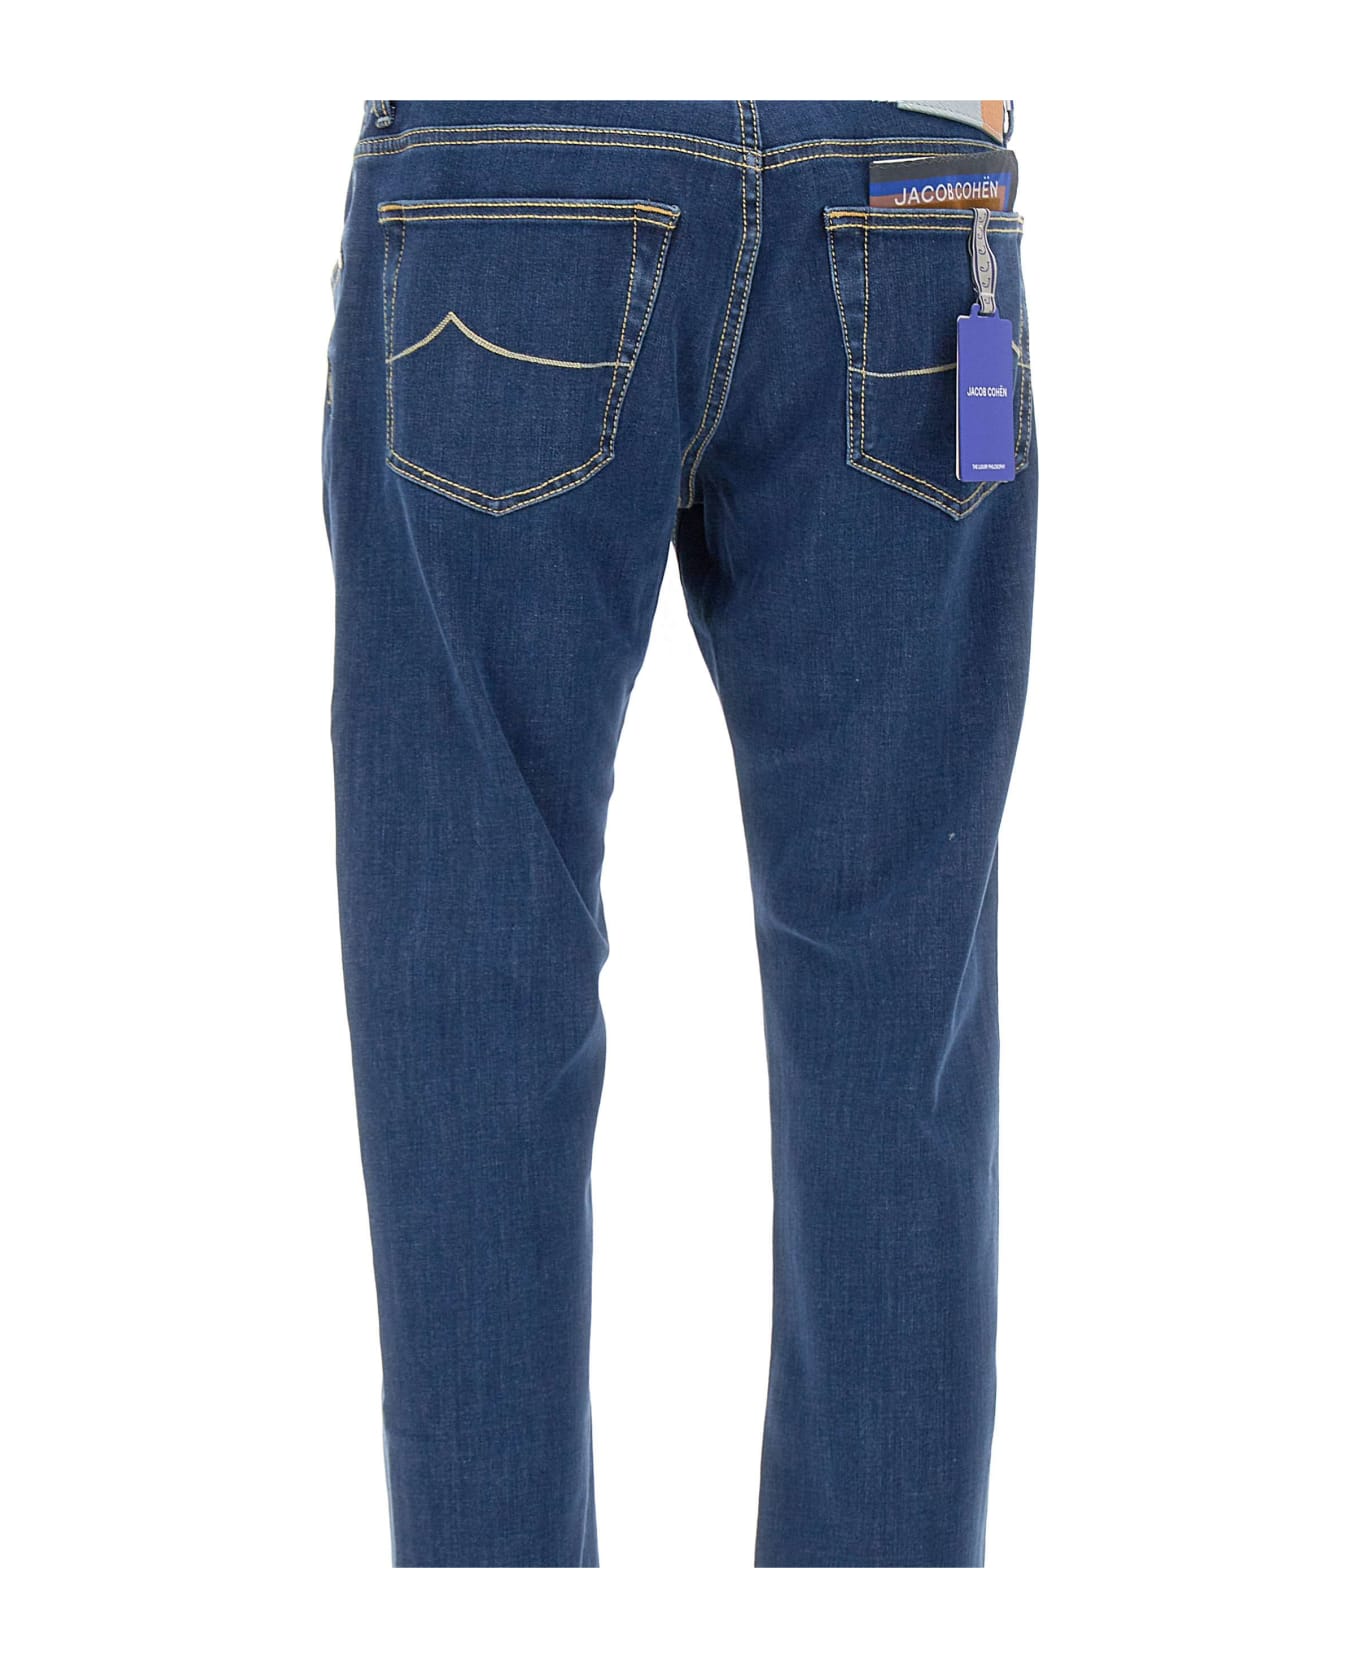 Jacob Cohen "nick" Jeans - BLUE